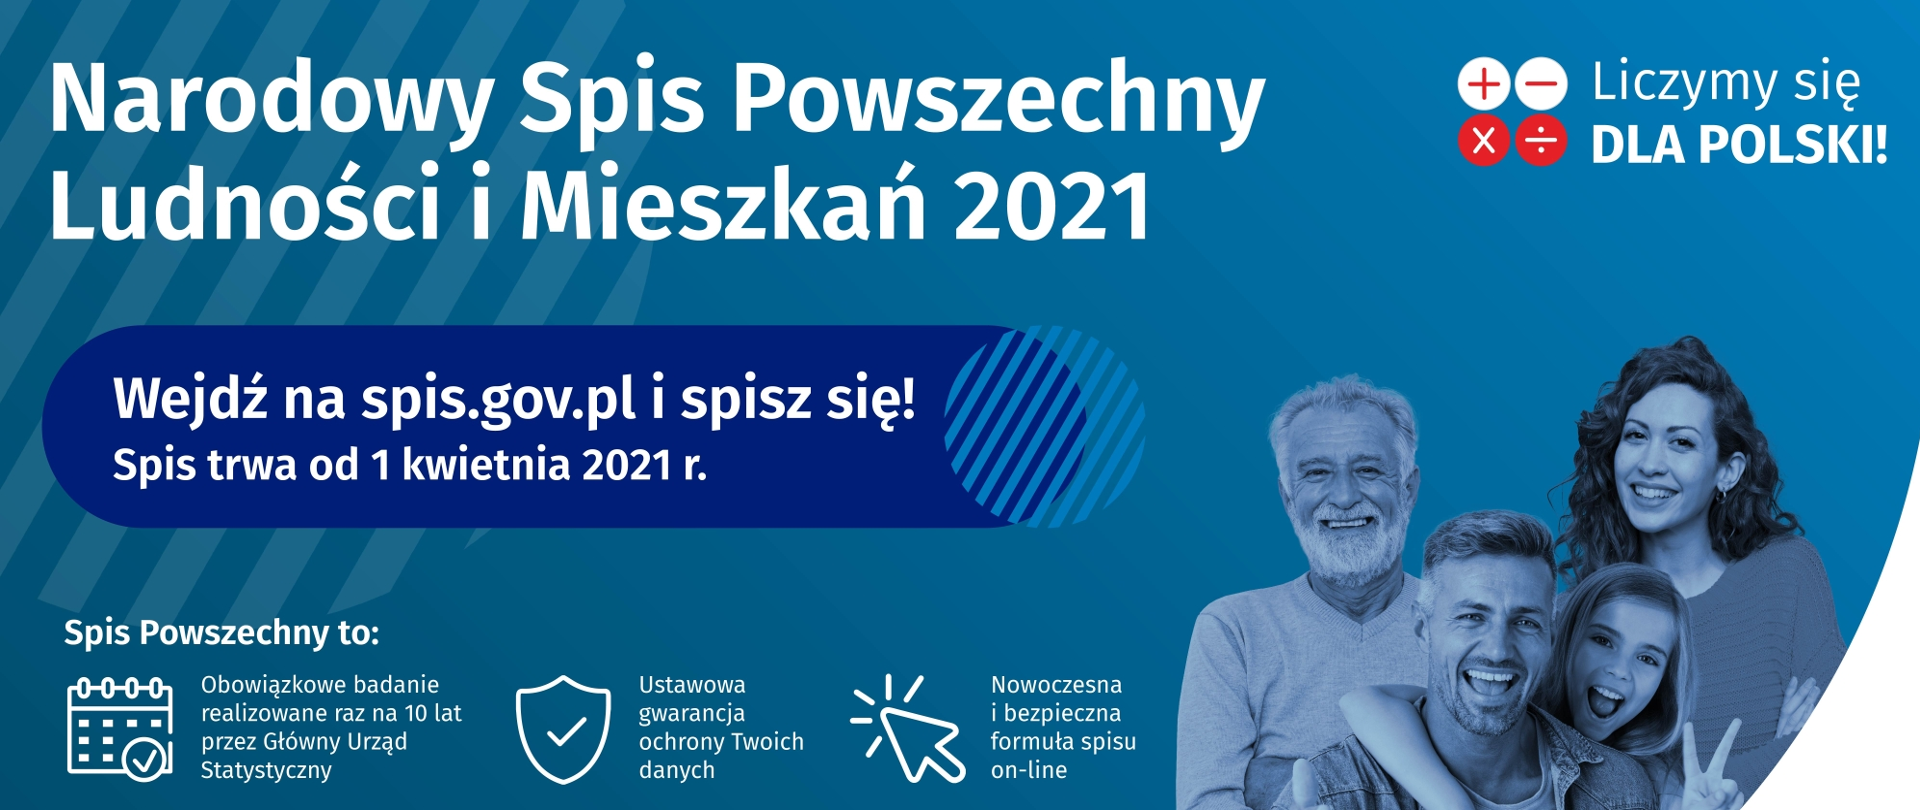 Wejdź na stronę spis .gov.pl i spisz się! Spis trwa od 1 kwietnia 2021 r.